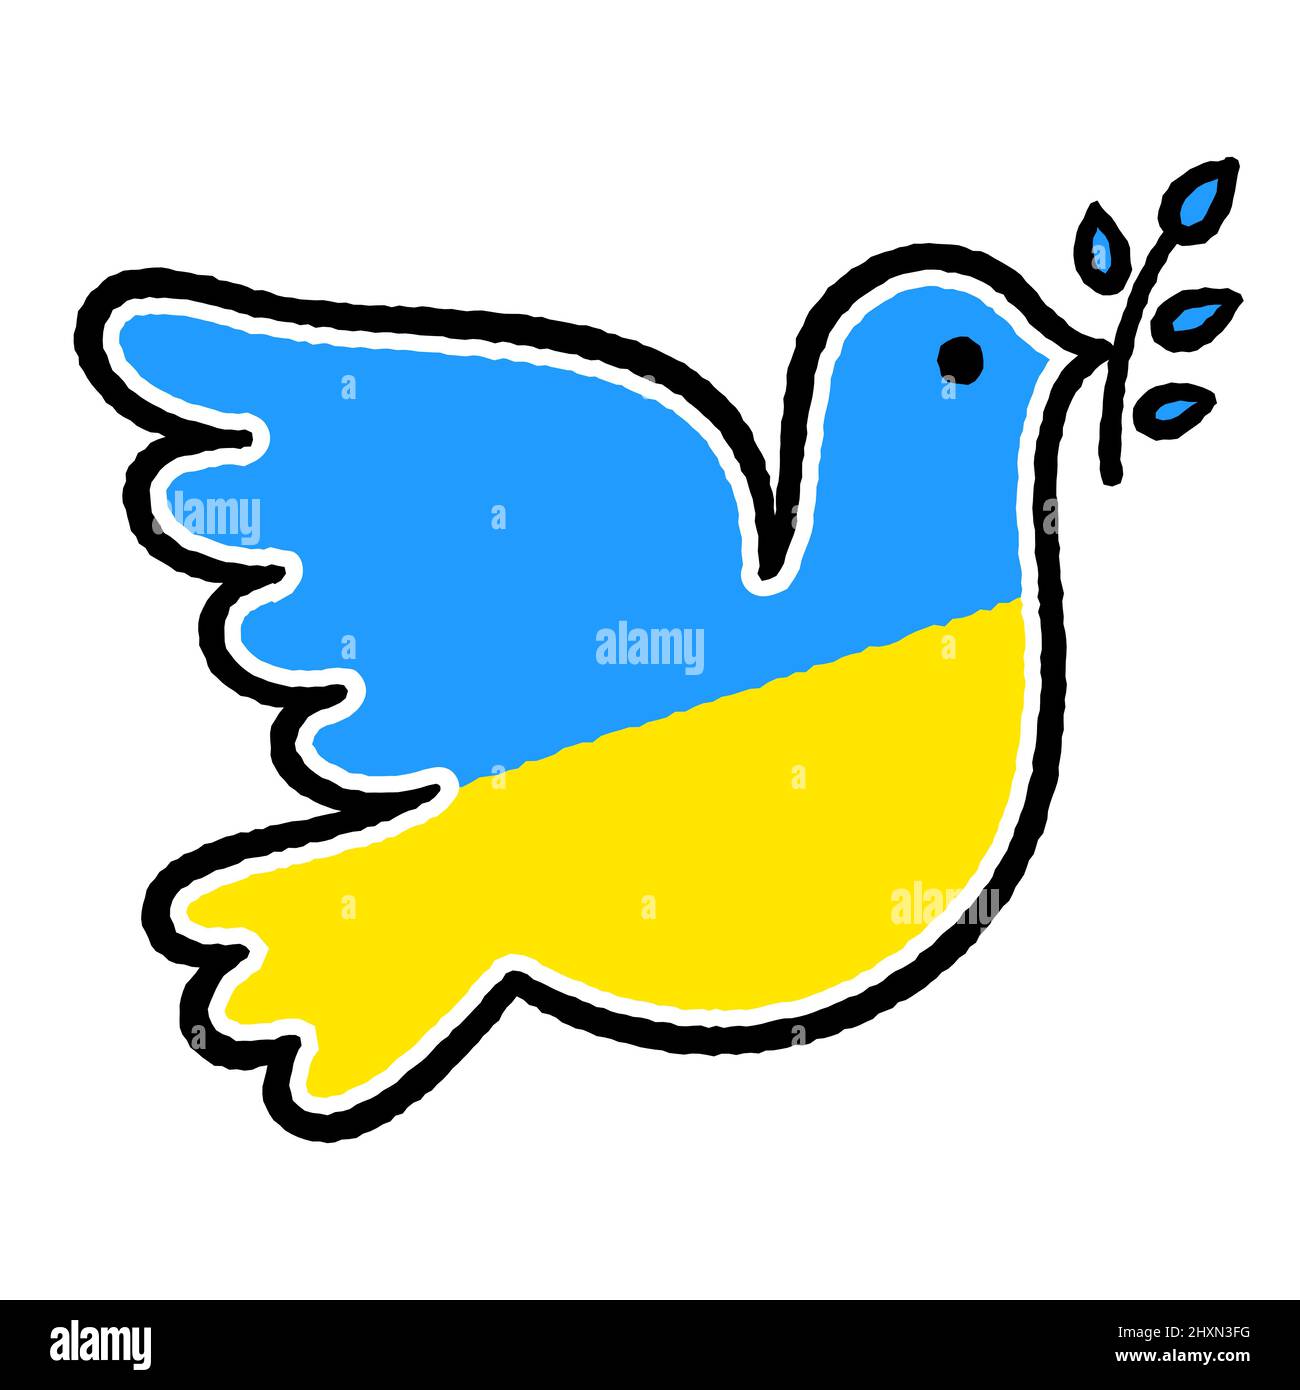 Suchergebnisse für: ukraine fland mit friedenstaube 60 x 90